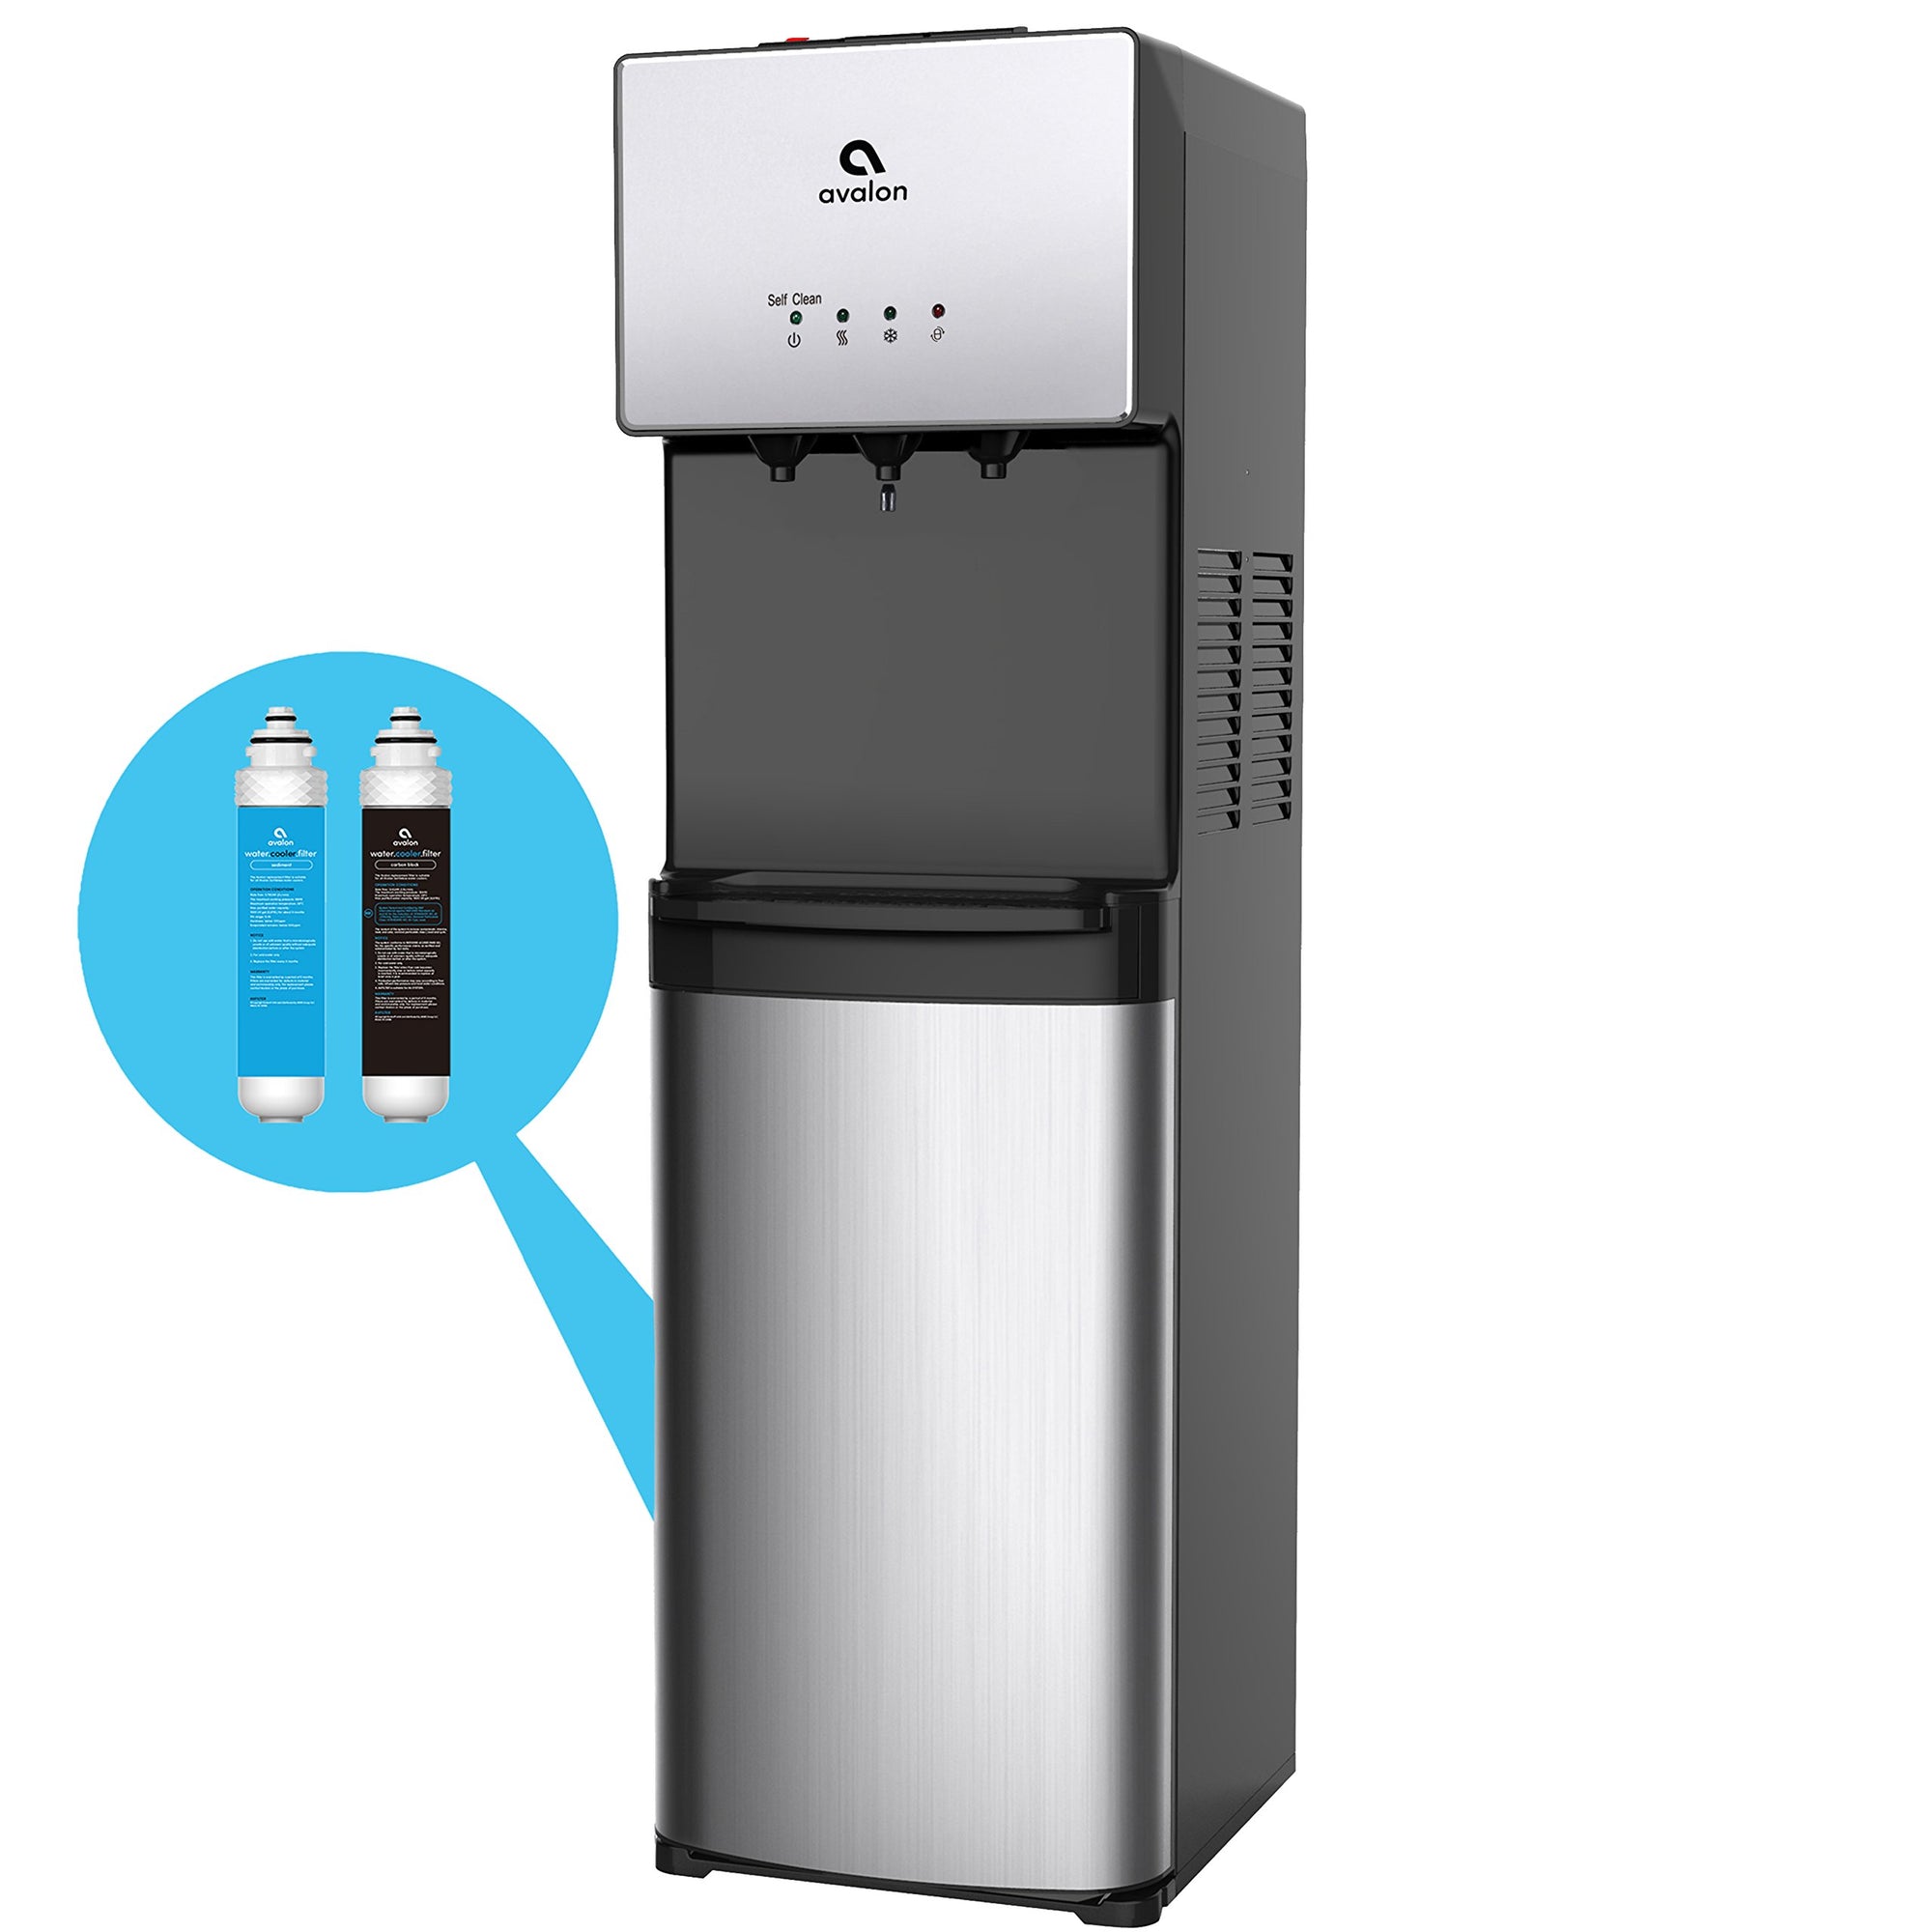 Avalon A5BOTTLELESS A5 Self Cleaning Bottleless Water Cooler Dispenser, Stainless Steel